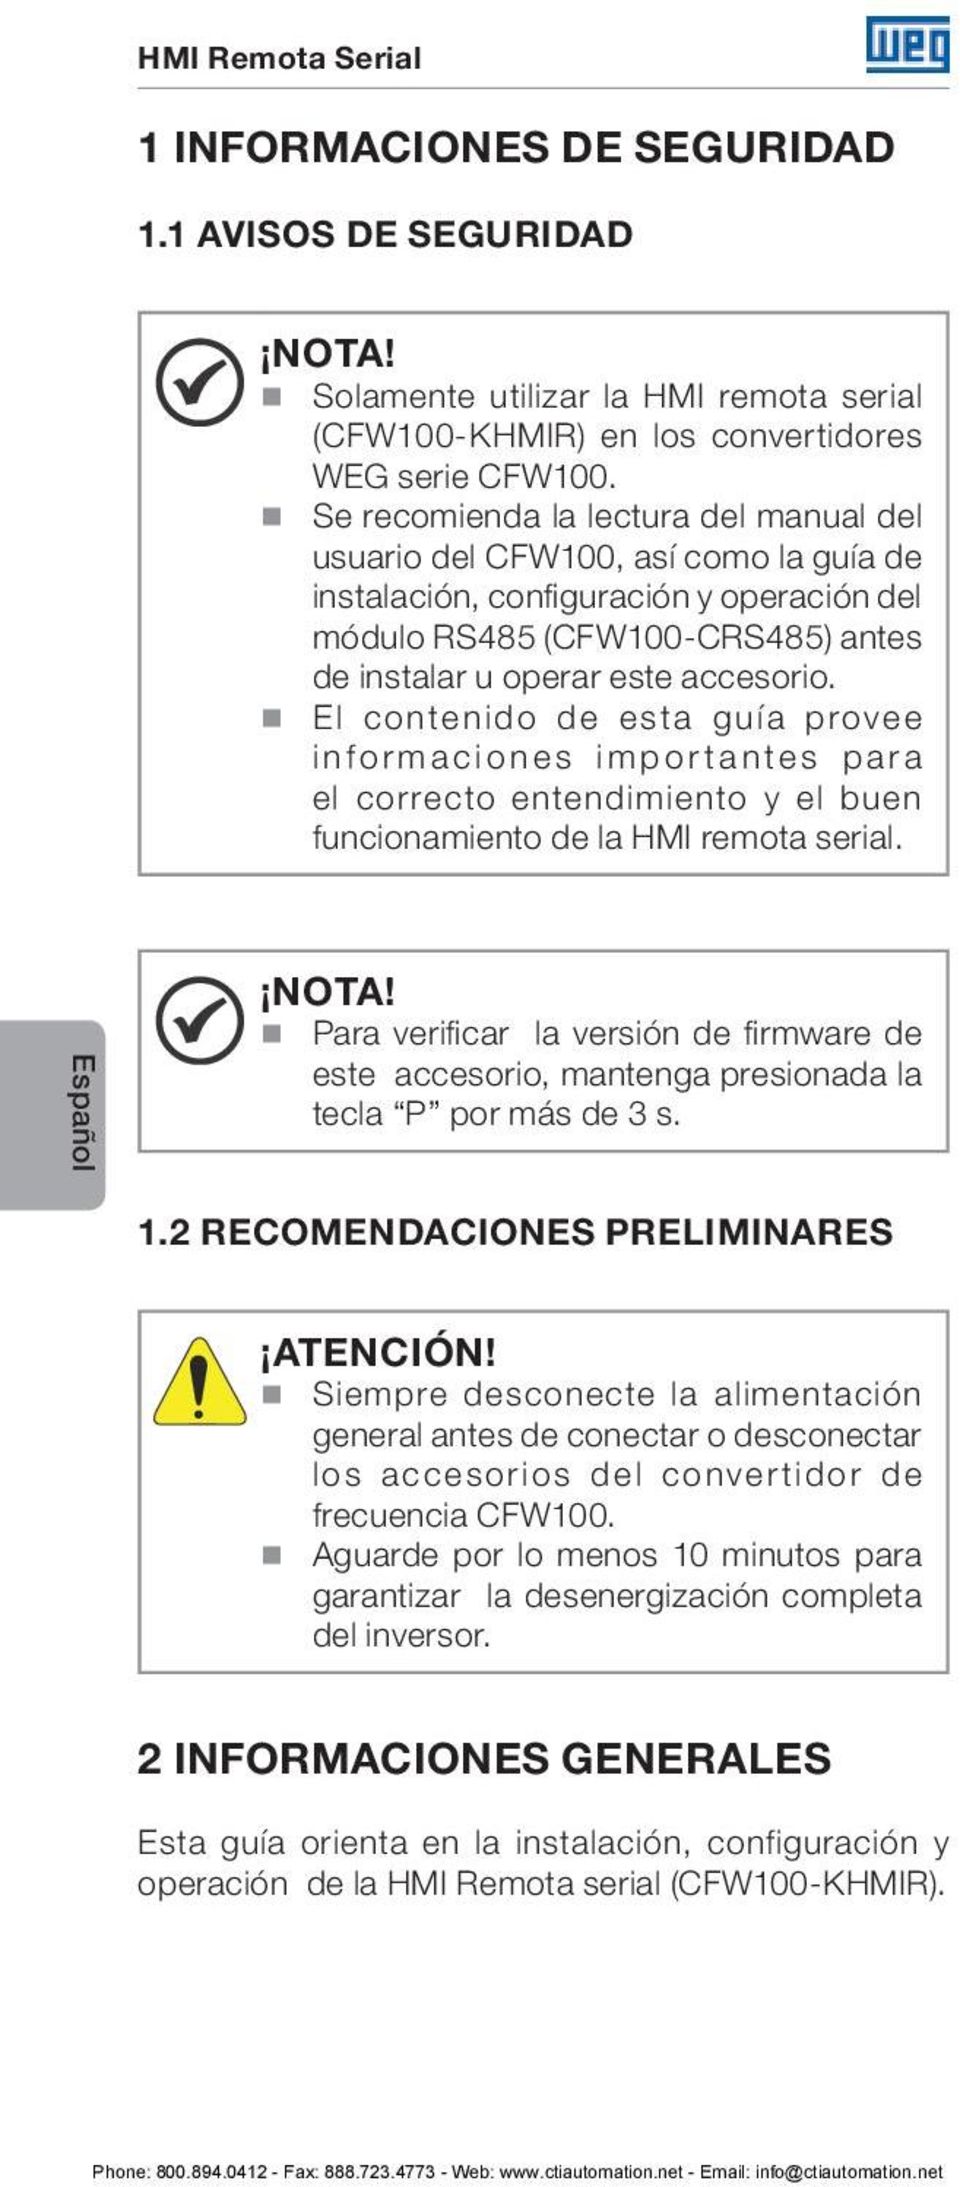 El contenido de esta guía provee informaciones importantes para el correcto entendimiento y el buen funcionamiento de la HMI remota serial. Español NOTA!